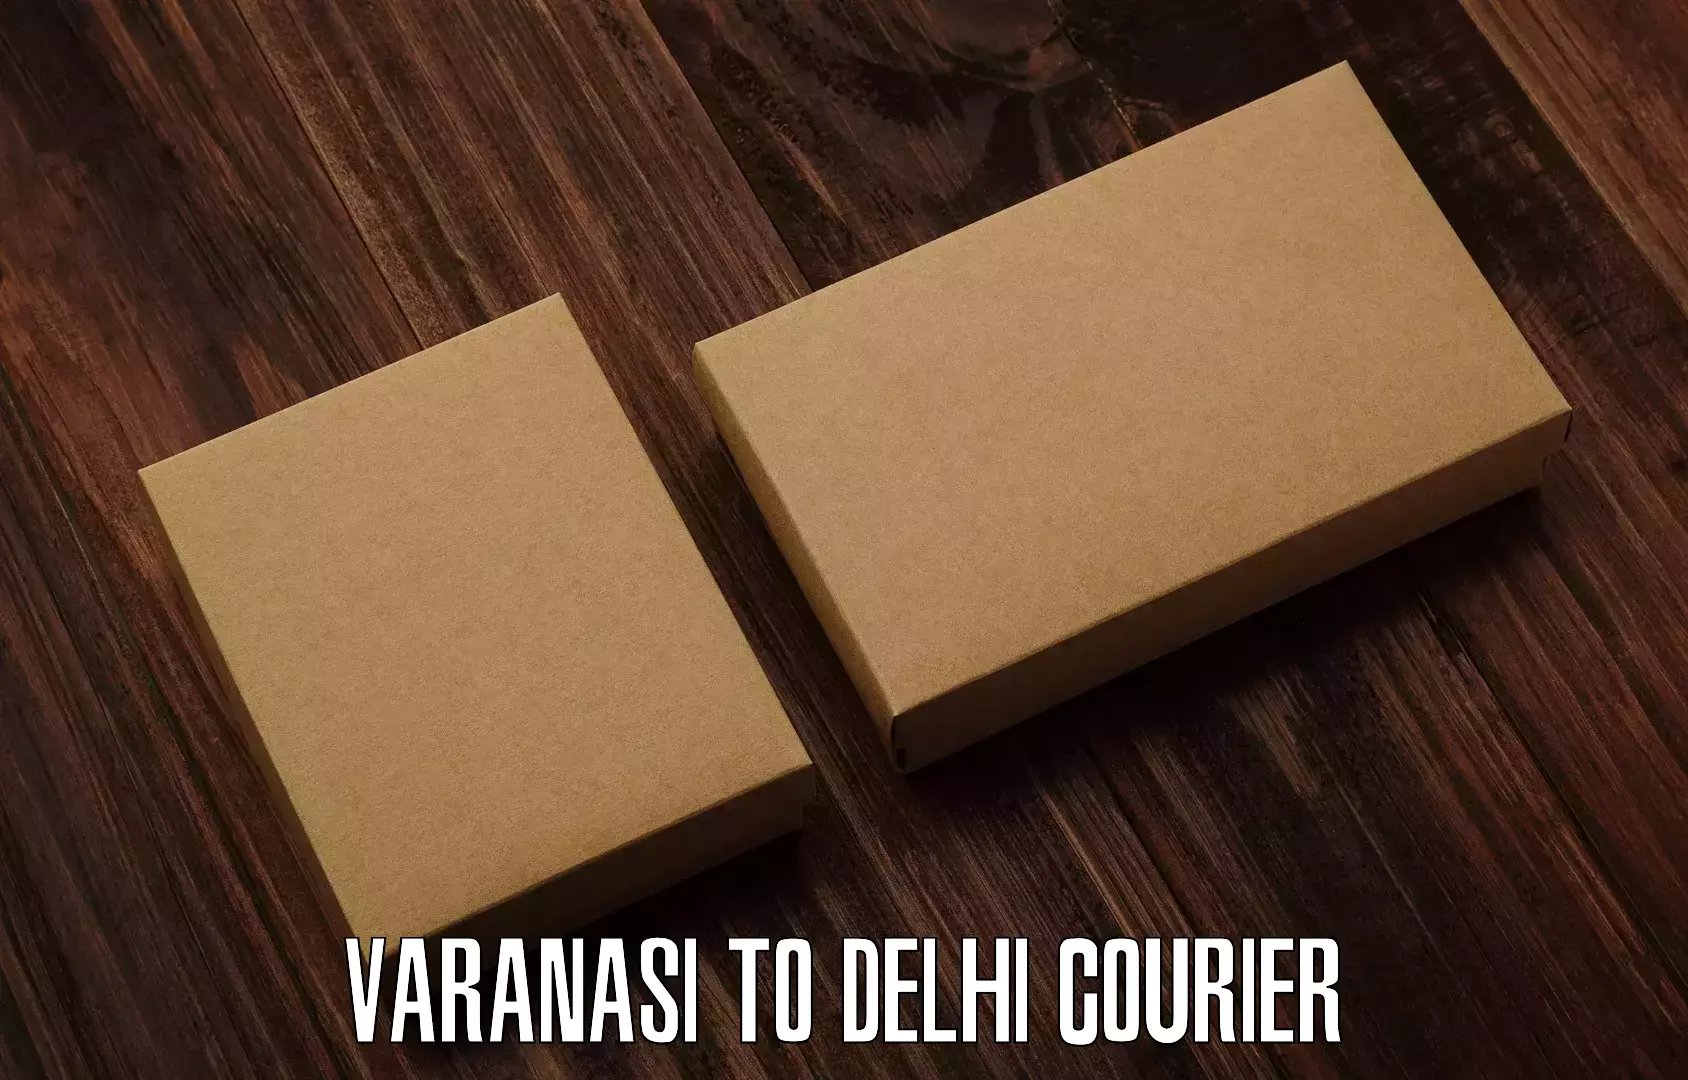 User-friendly courier app Varanasi to University of Delhi